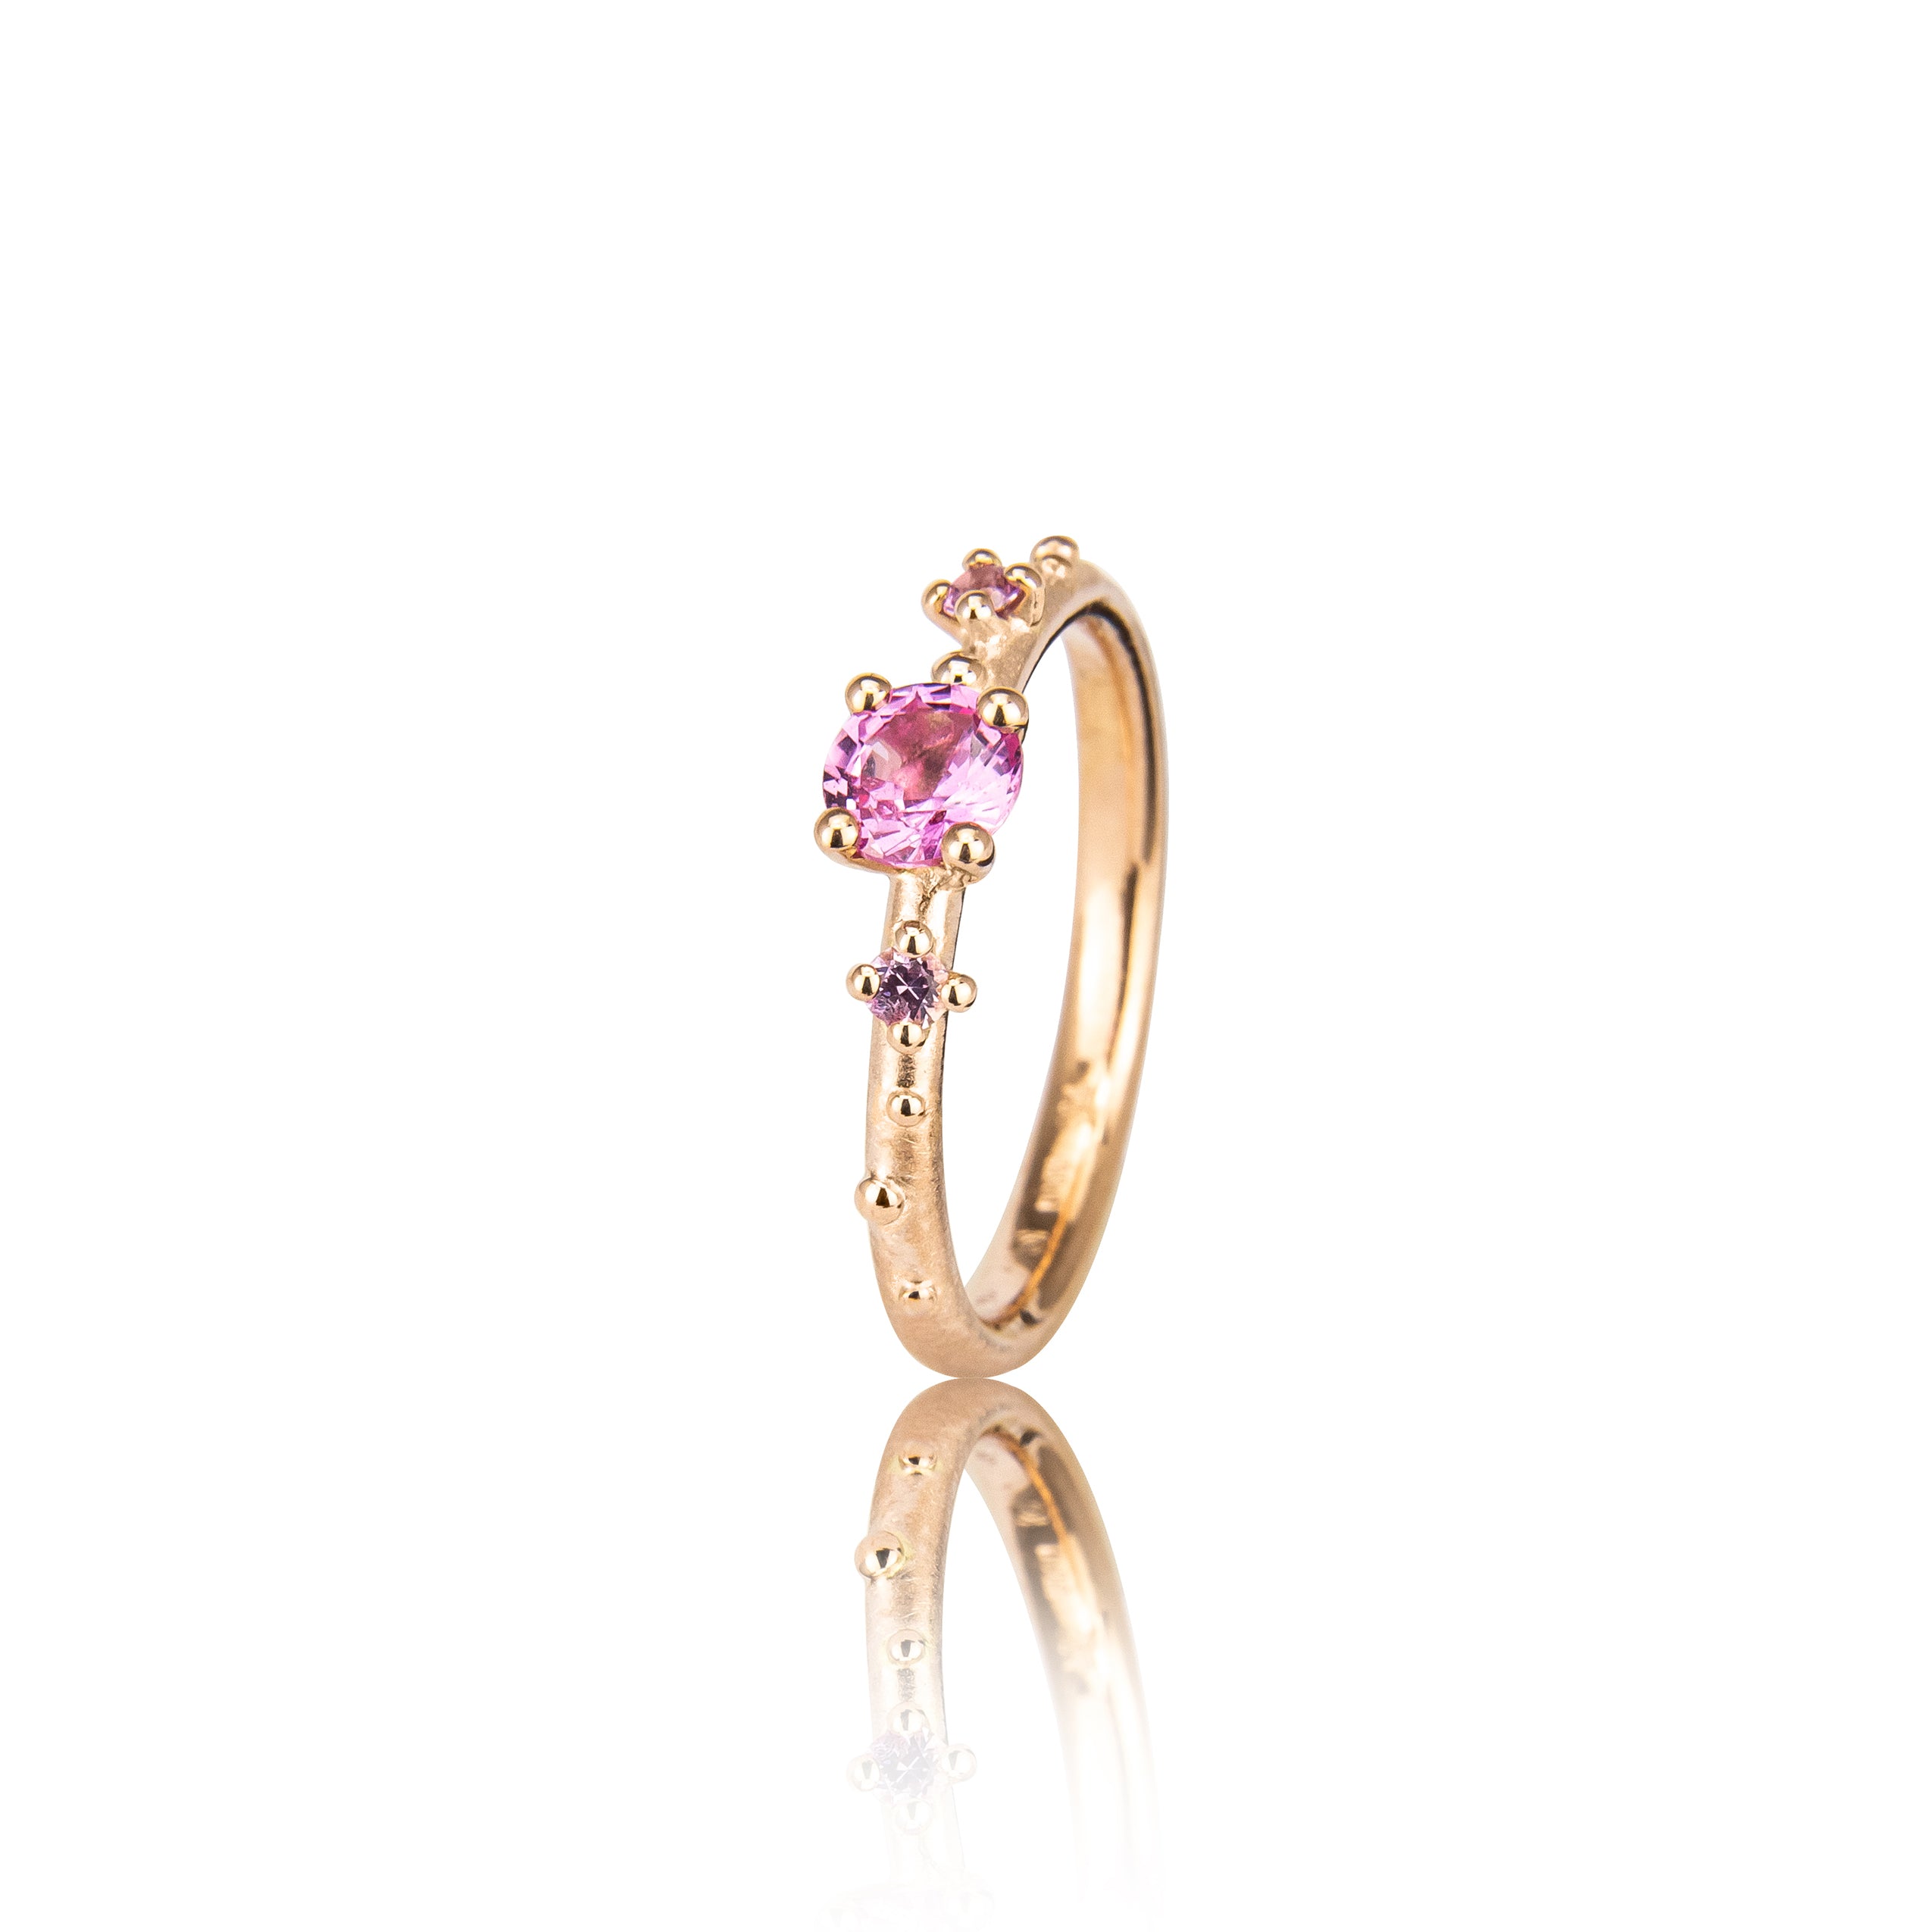 Shine-ring "Pink" i guld med safirer